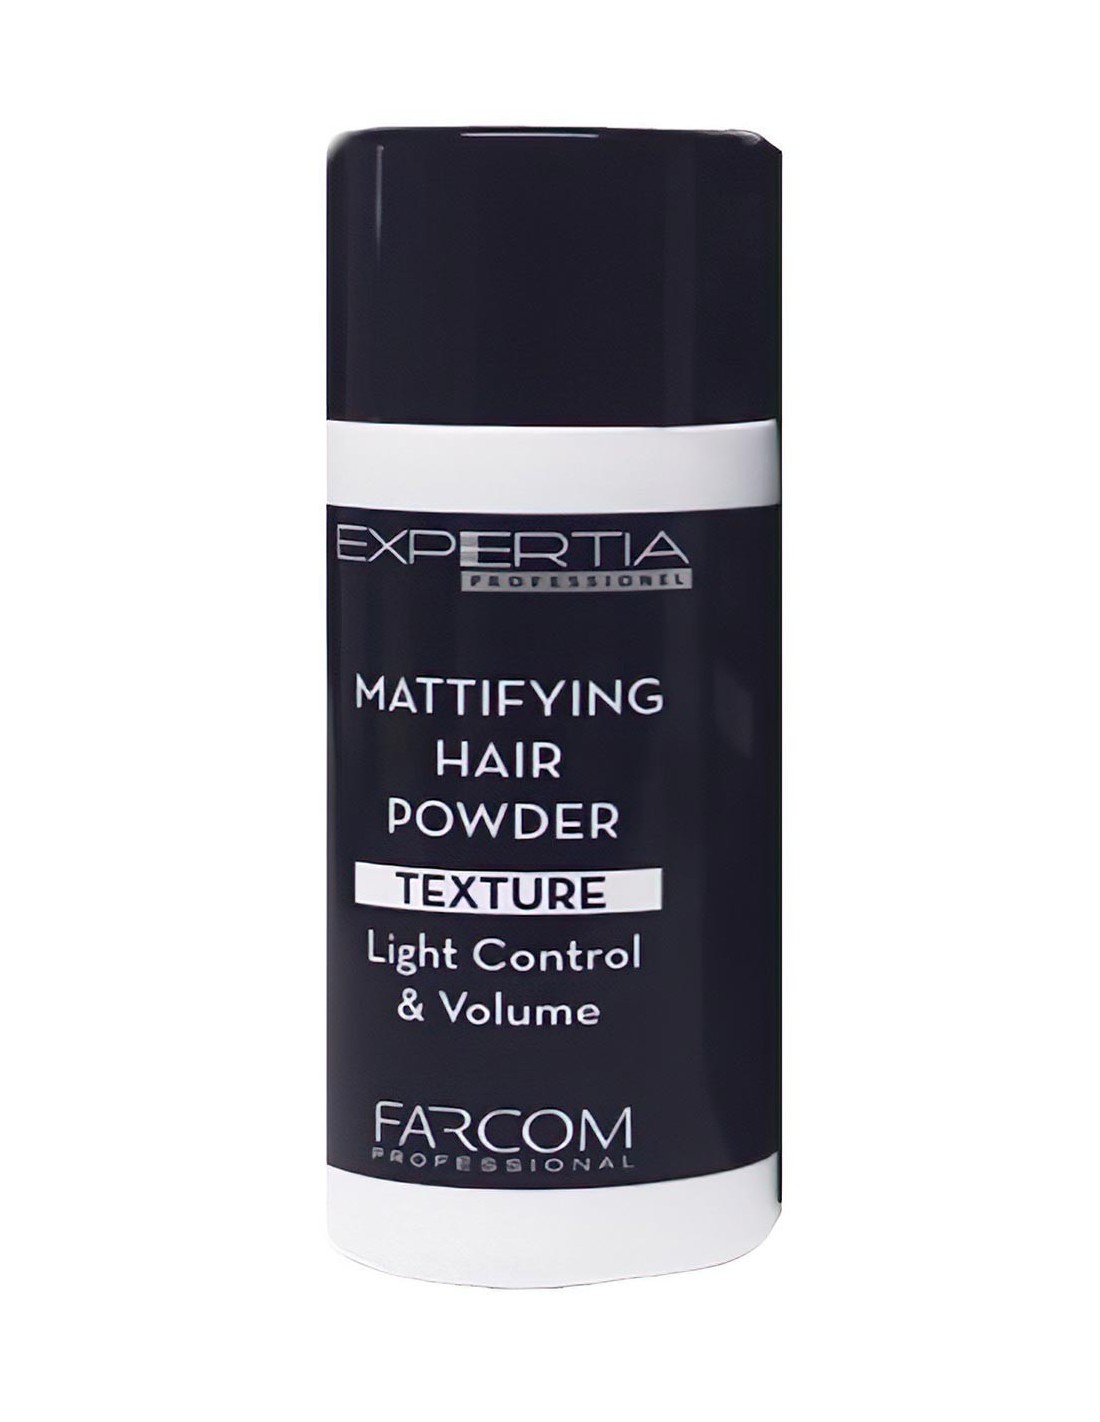 Farcom Expertia Professionel Mattifying Hair Powder 